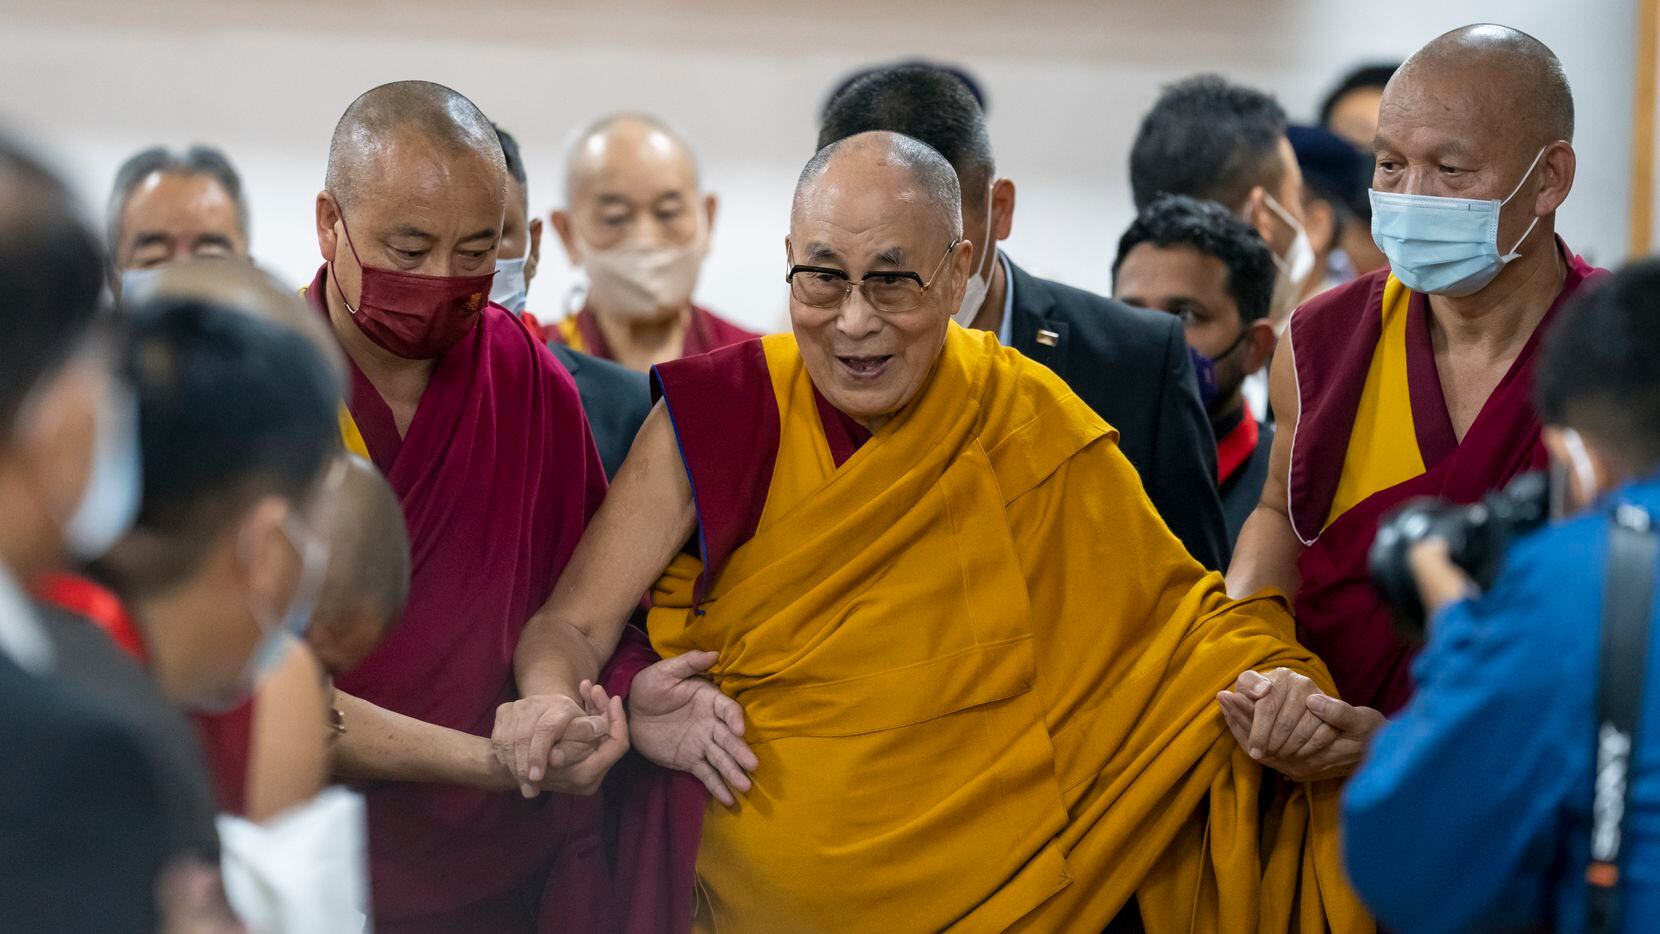 El Dalai Lama, líder espiritual tibetano, arriba a la inauguración de un museo y archivo...